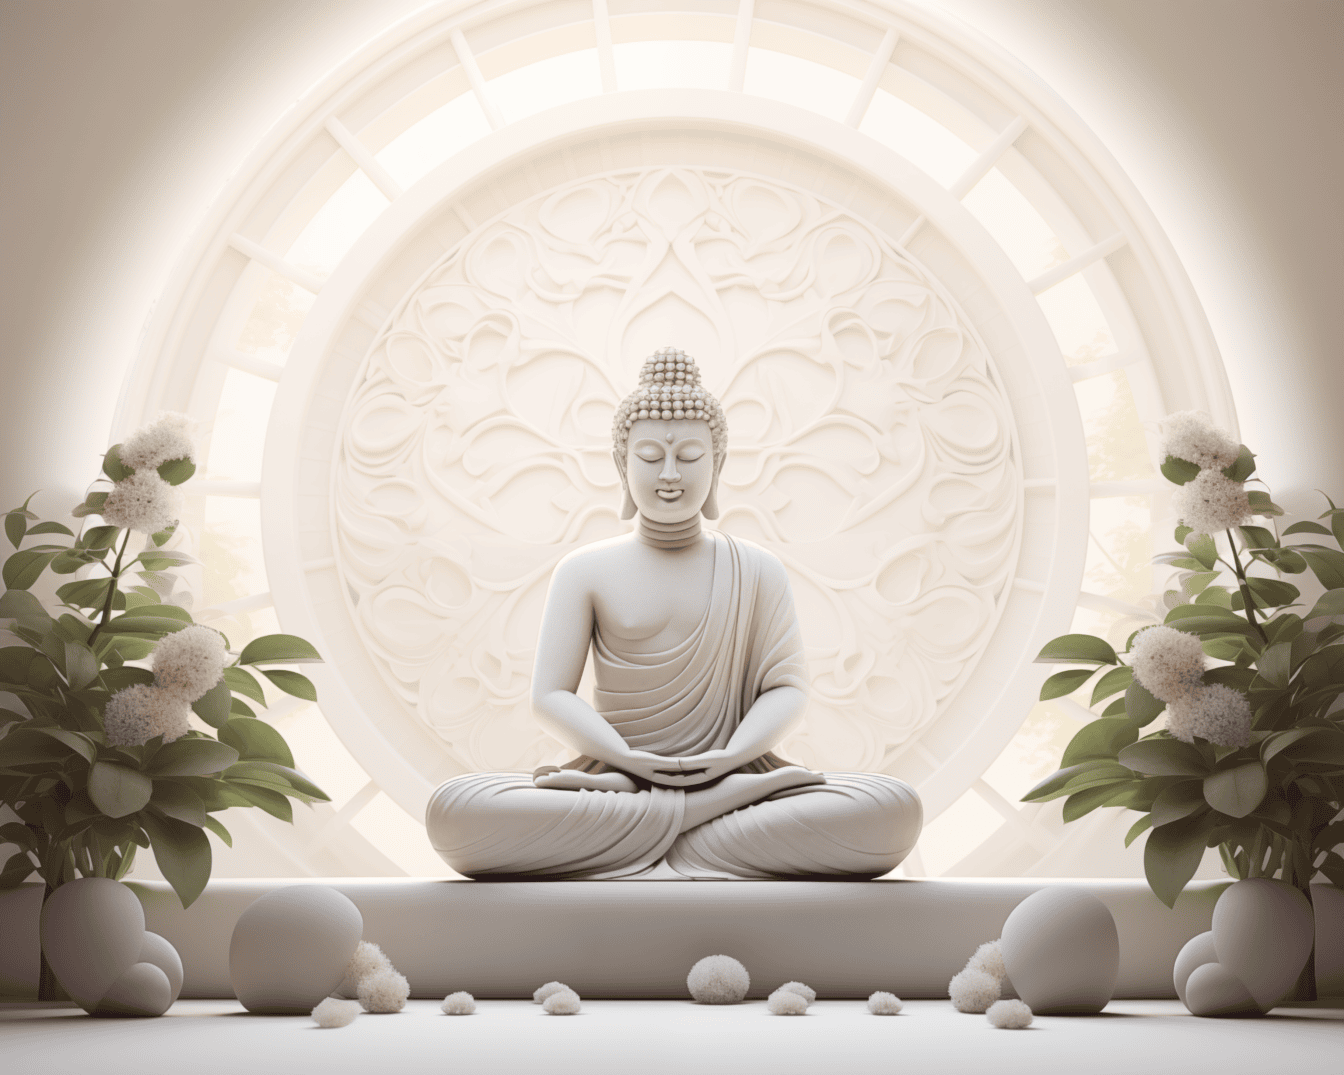 Upea valkoinen patsas Buddhasta, joka istuu lootusasennossa ja meditoi valkoisten kukkien vieressä